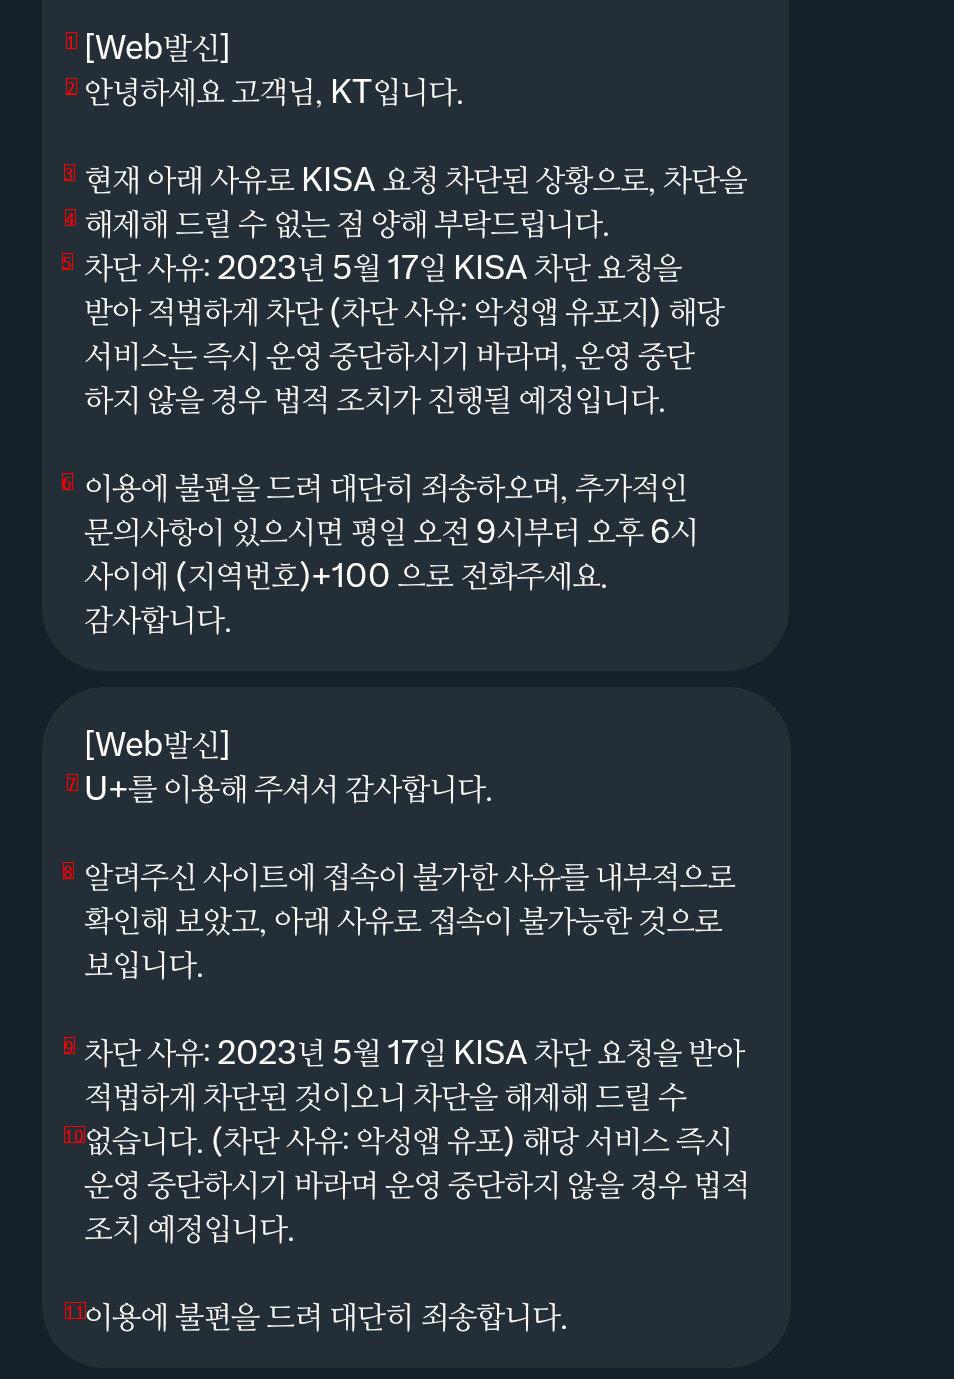 韓国インターネット振興院の要請でskktユーフルクラウドフレアサービスドメインを遮断中